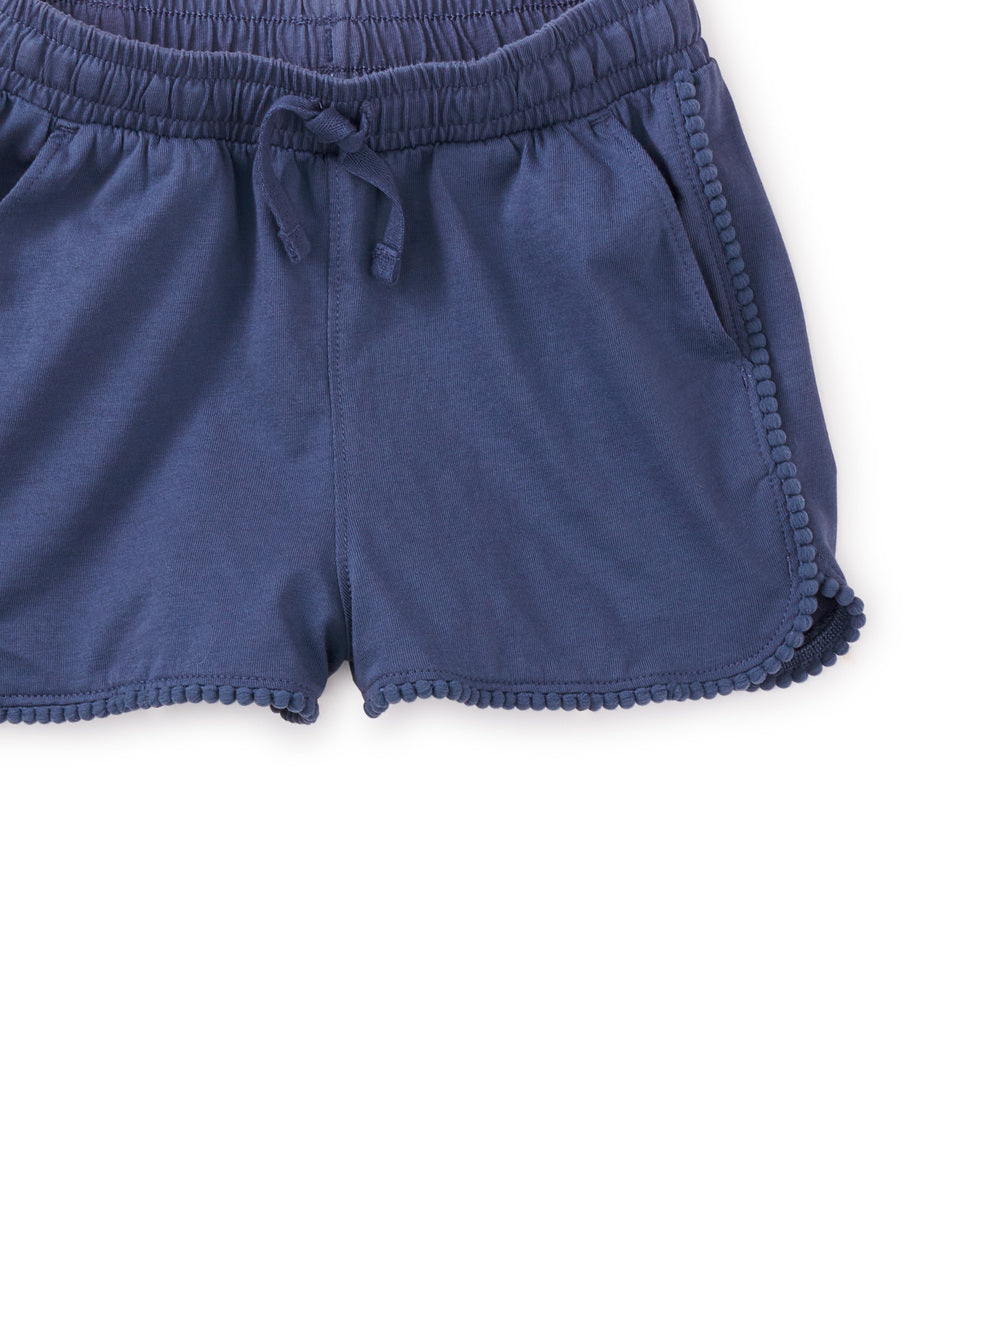 Indigo Pom-Pom Gym Shorts